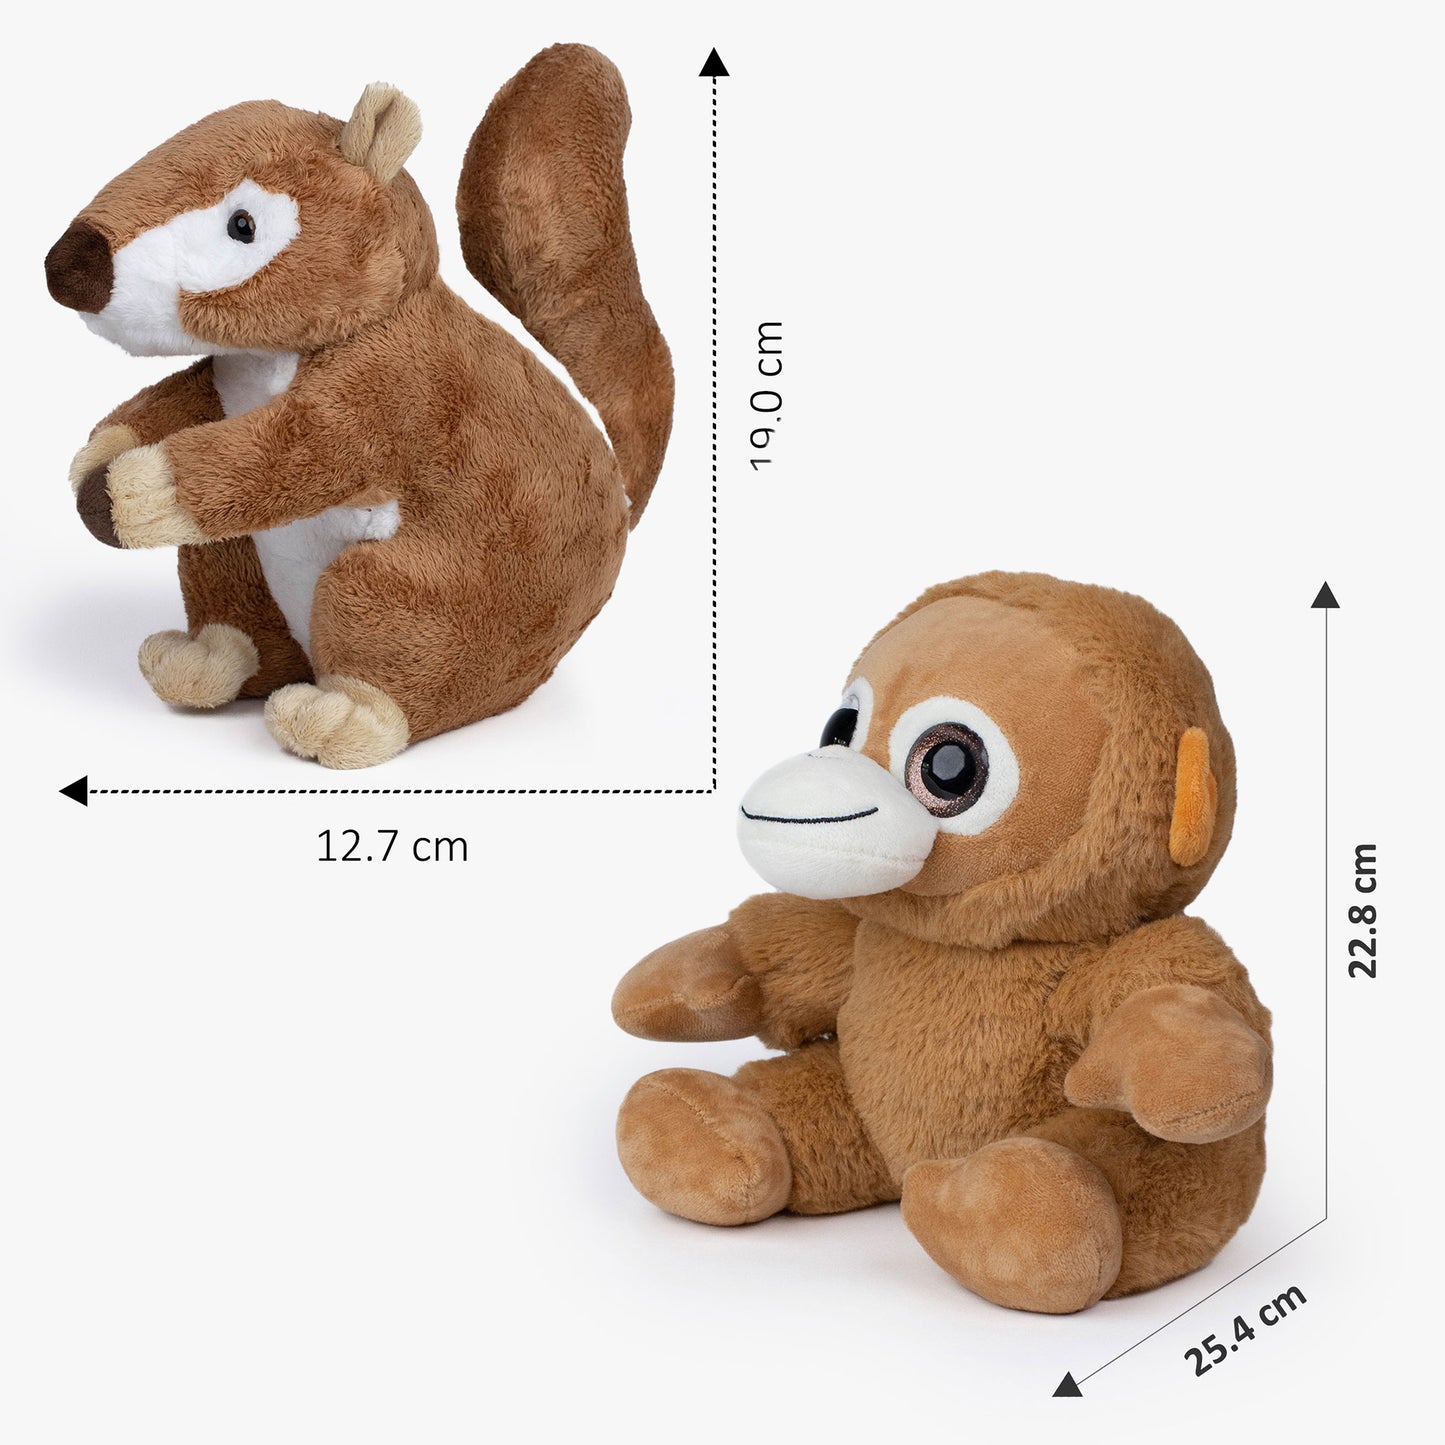 Combo Plush Squirrel & Monkey Dog Soft Toy